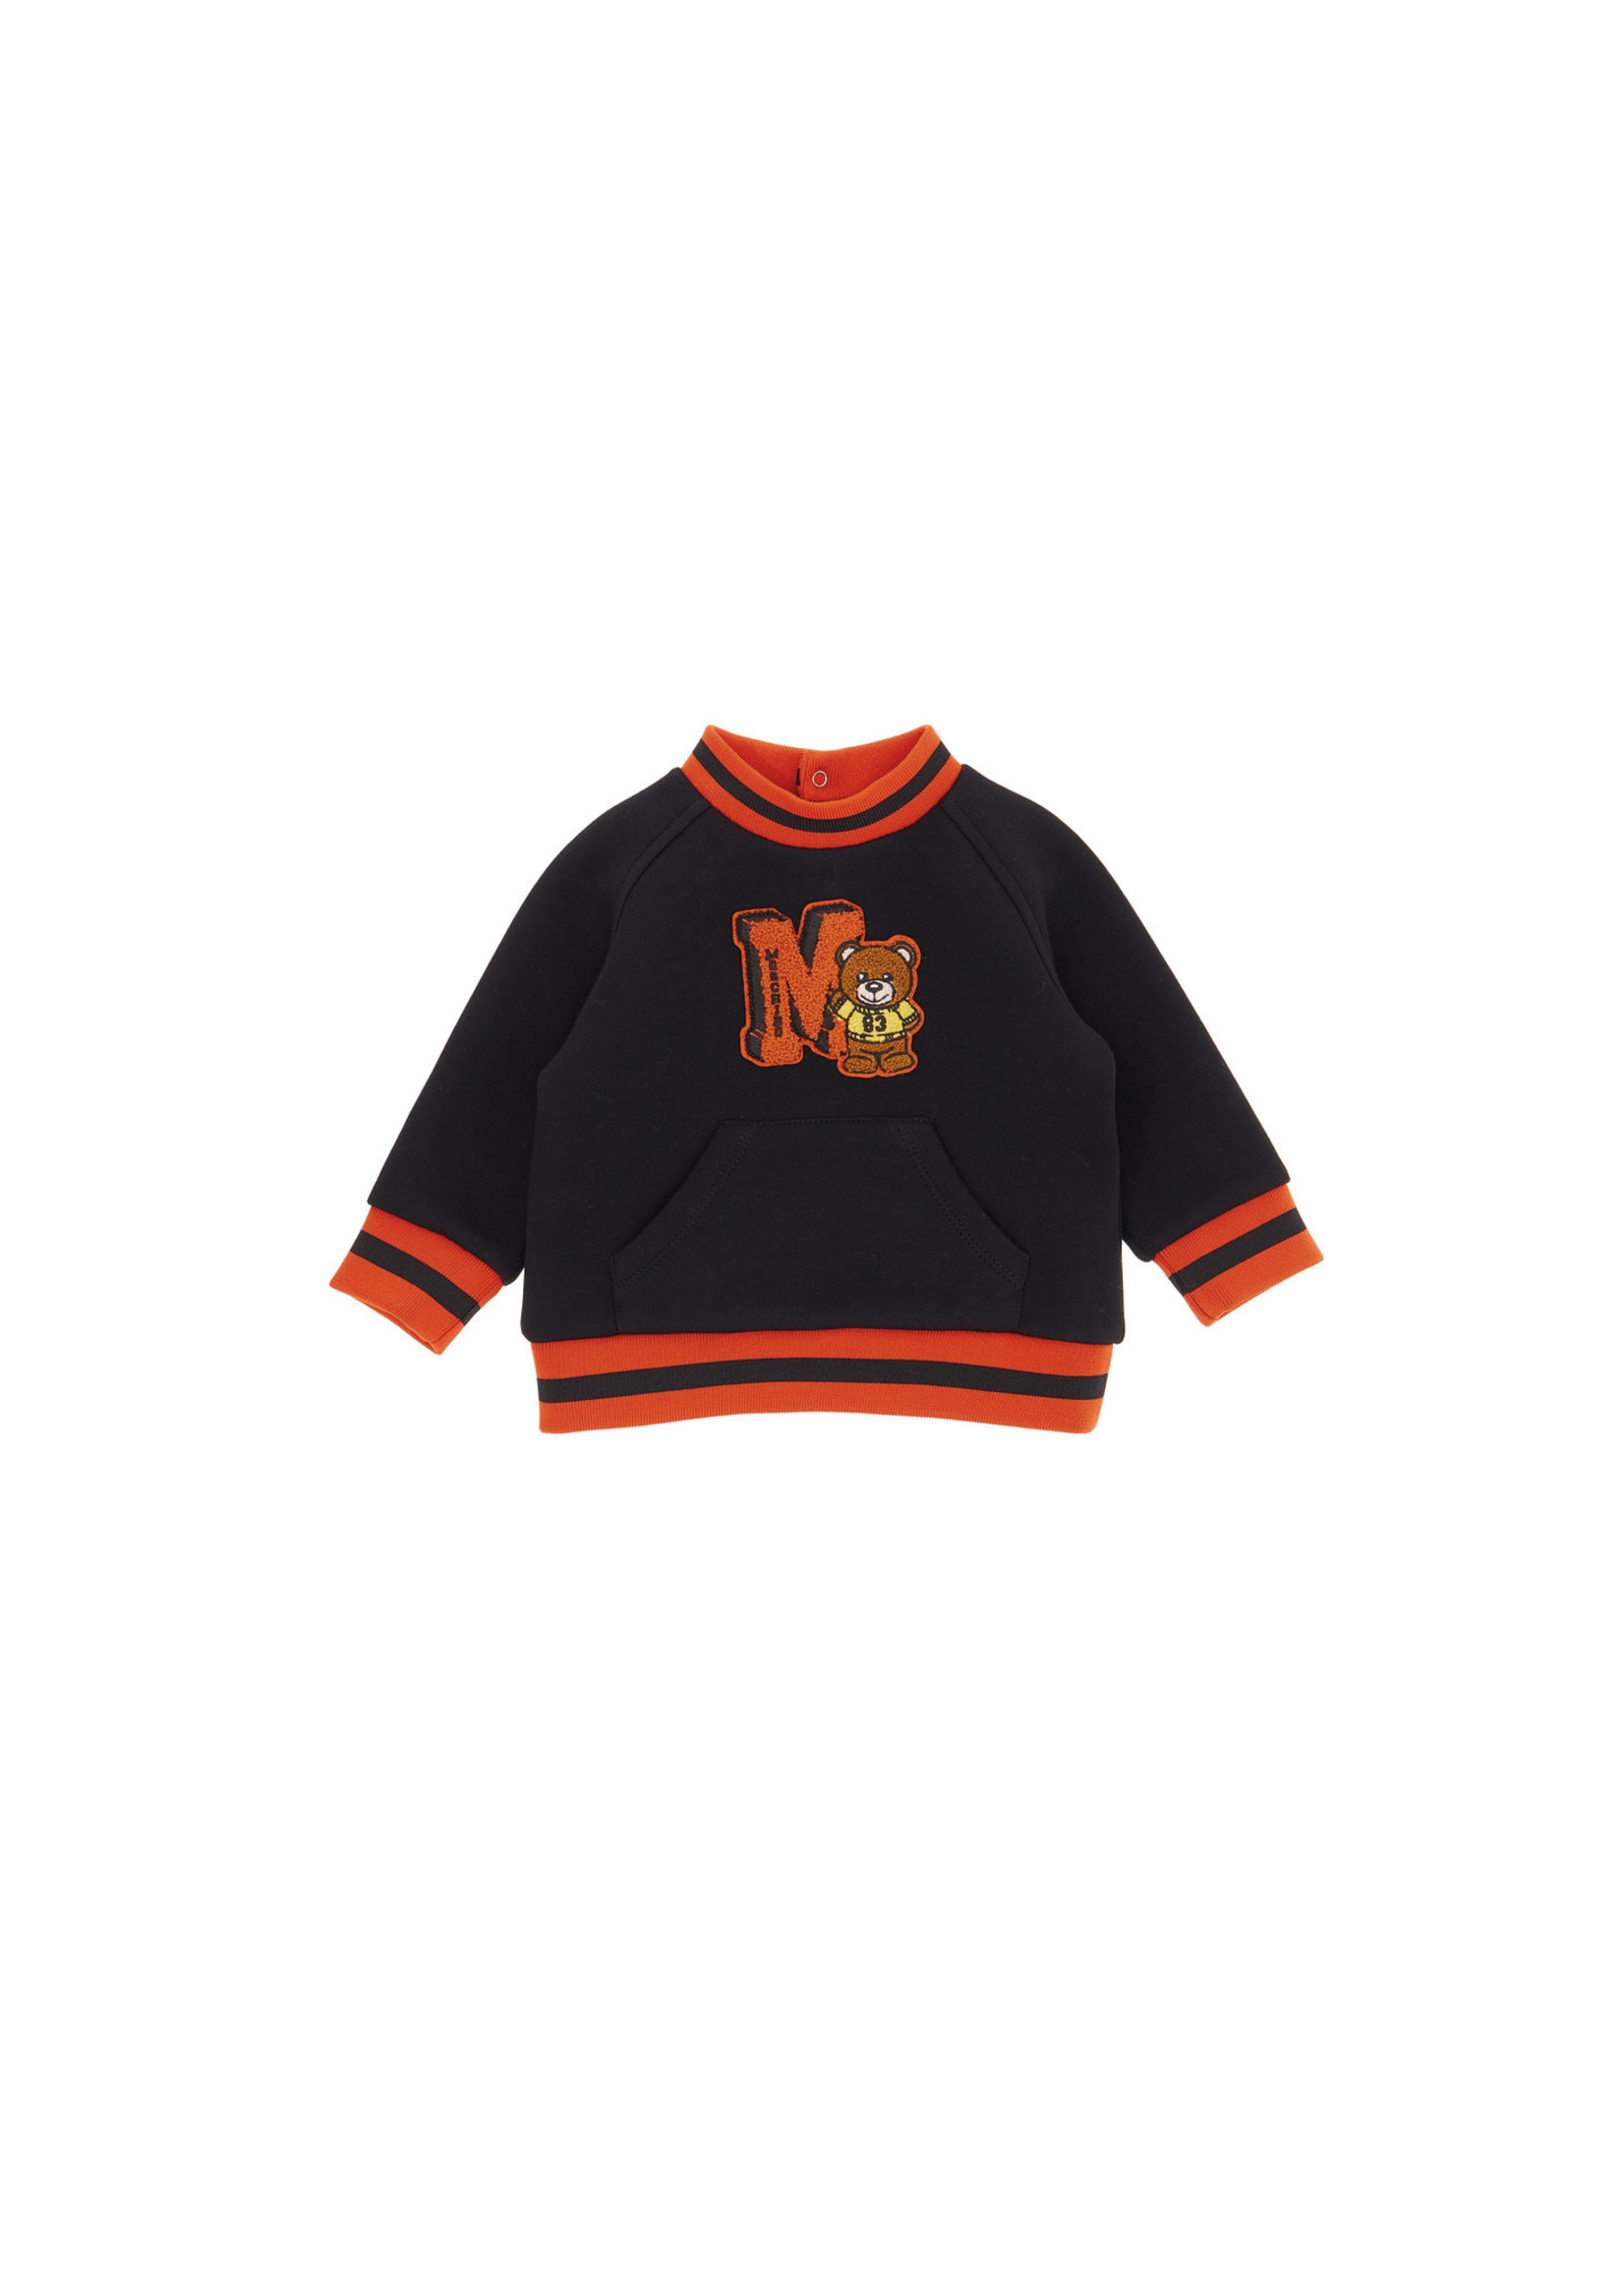 Moschino Sweater zwart oranje